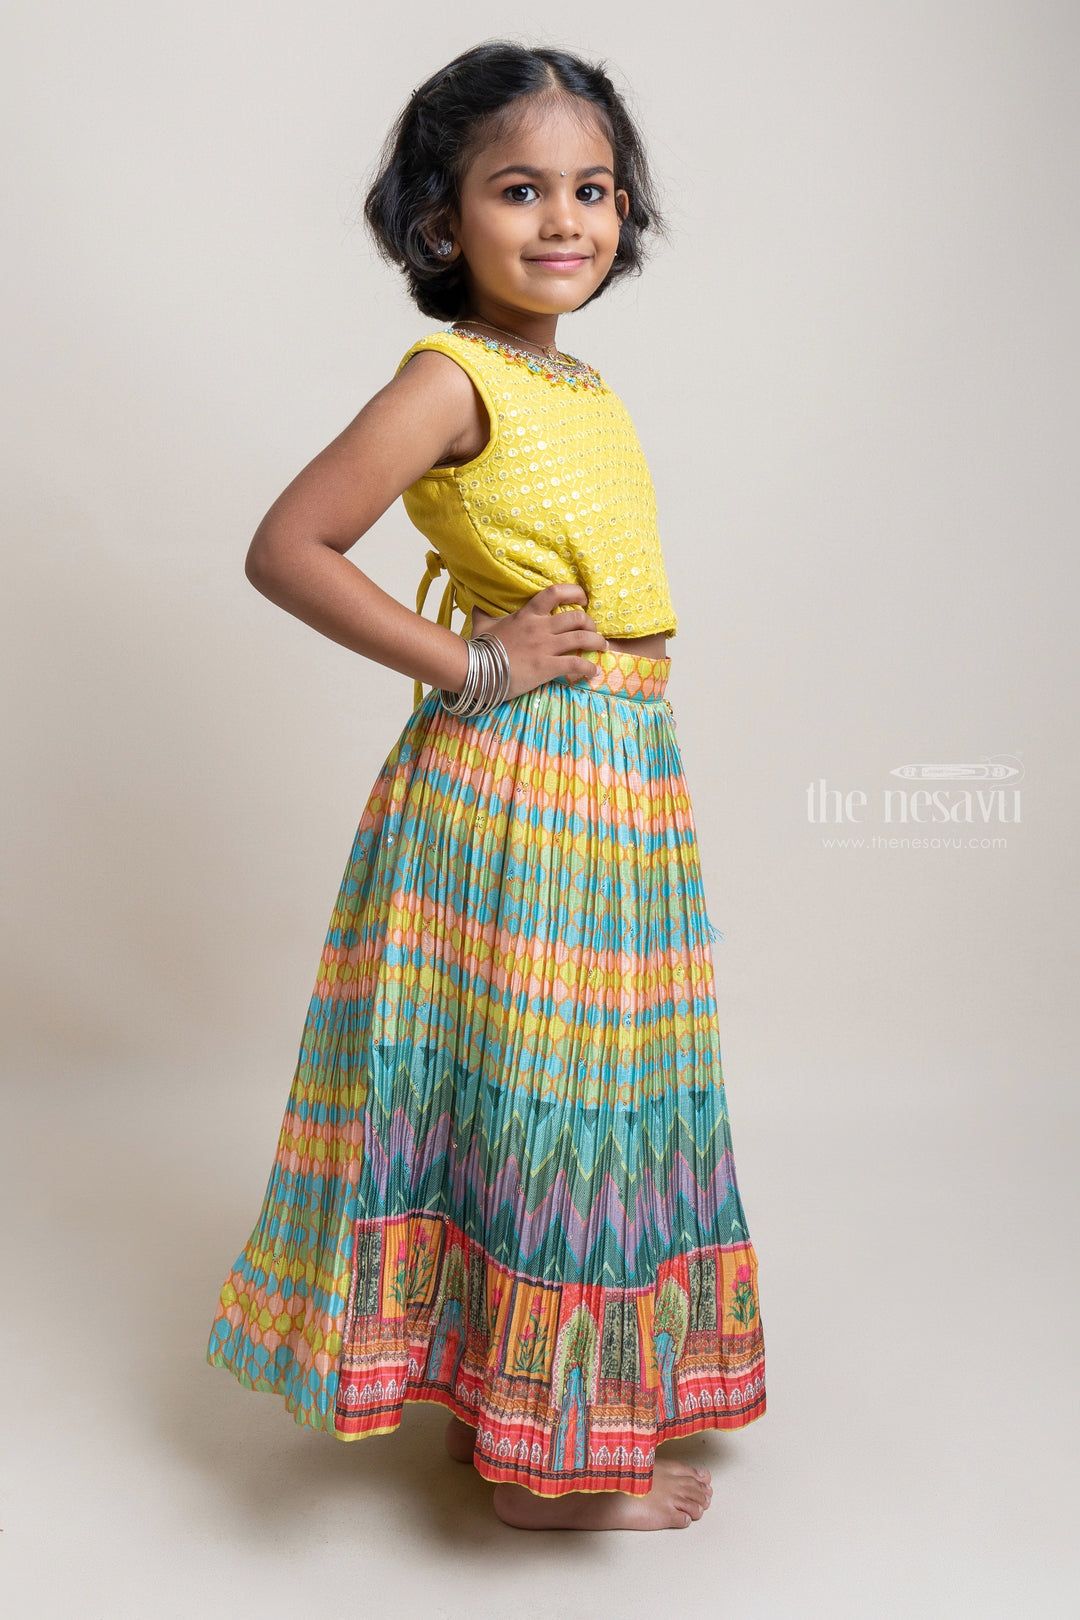 The Nesavu Lehenga & Ghagra Eye-catching Yellow Sleeveless Choli With Zig-Zag Printed Lehanga Set For Girls Nesavu Premium Printed Lehanga Choli For Girls | Top 5 Dresses For Girls | The Nesavu